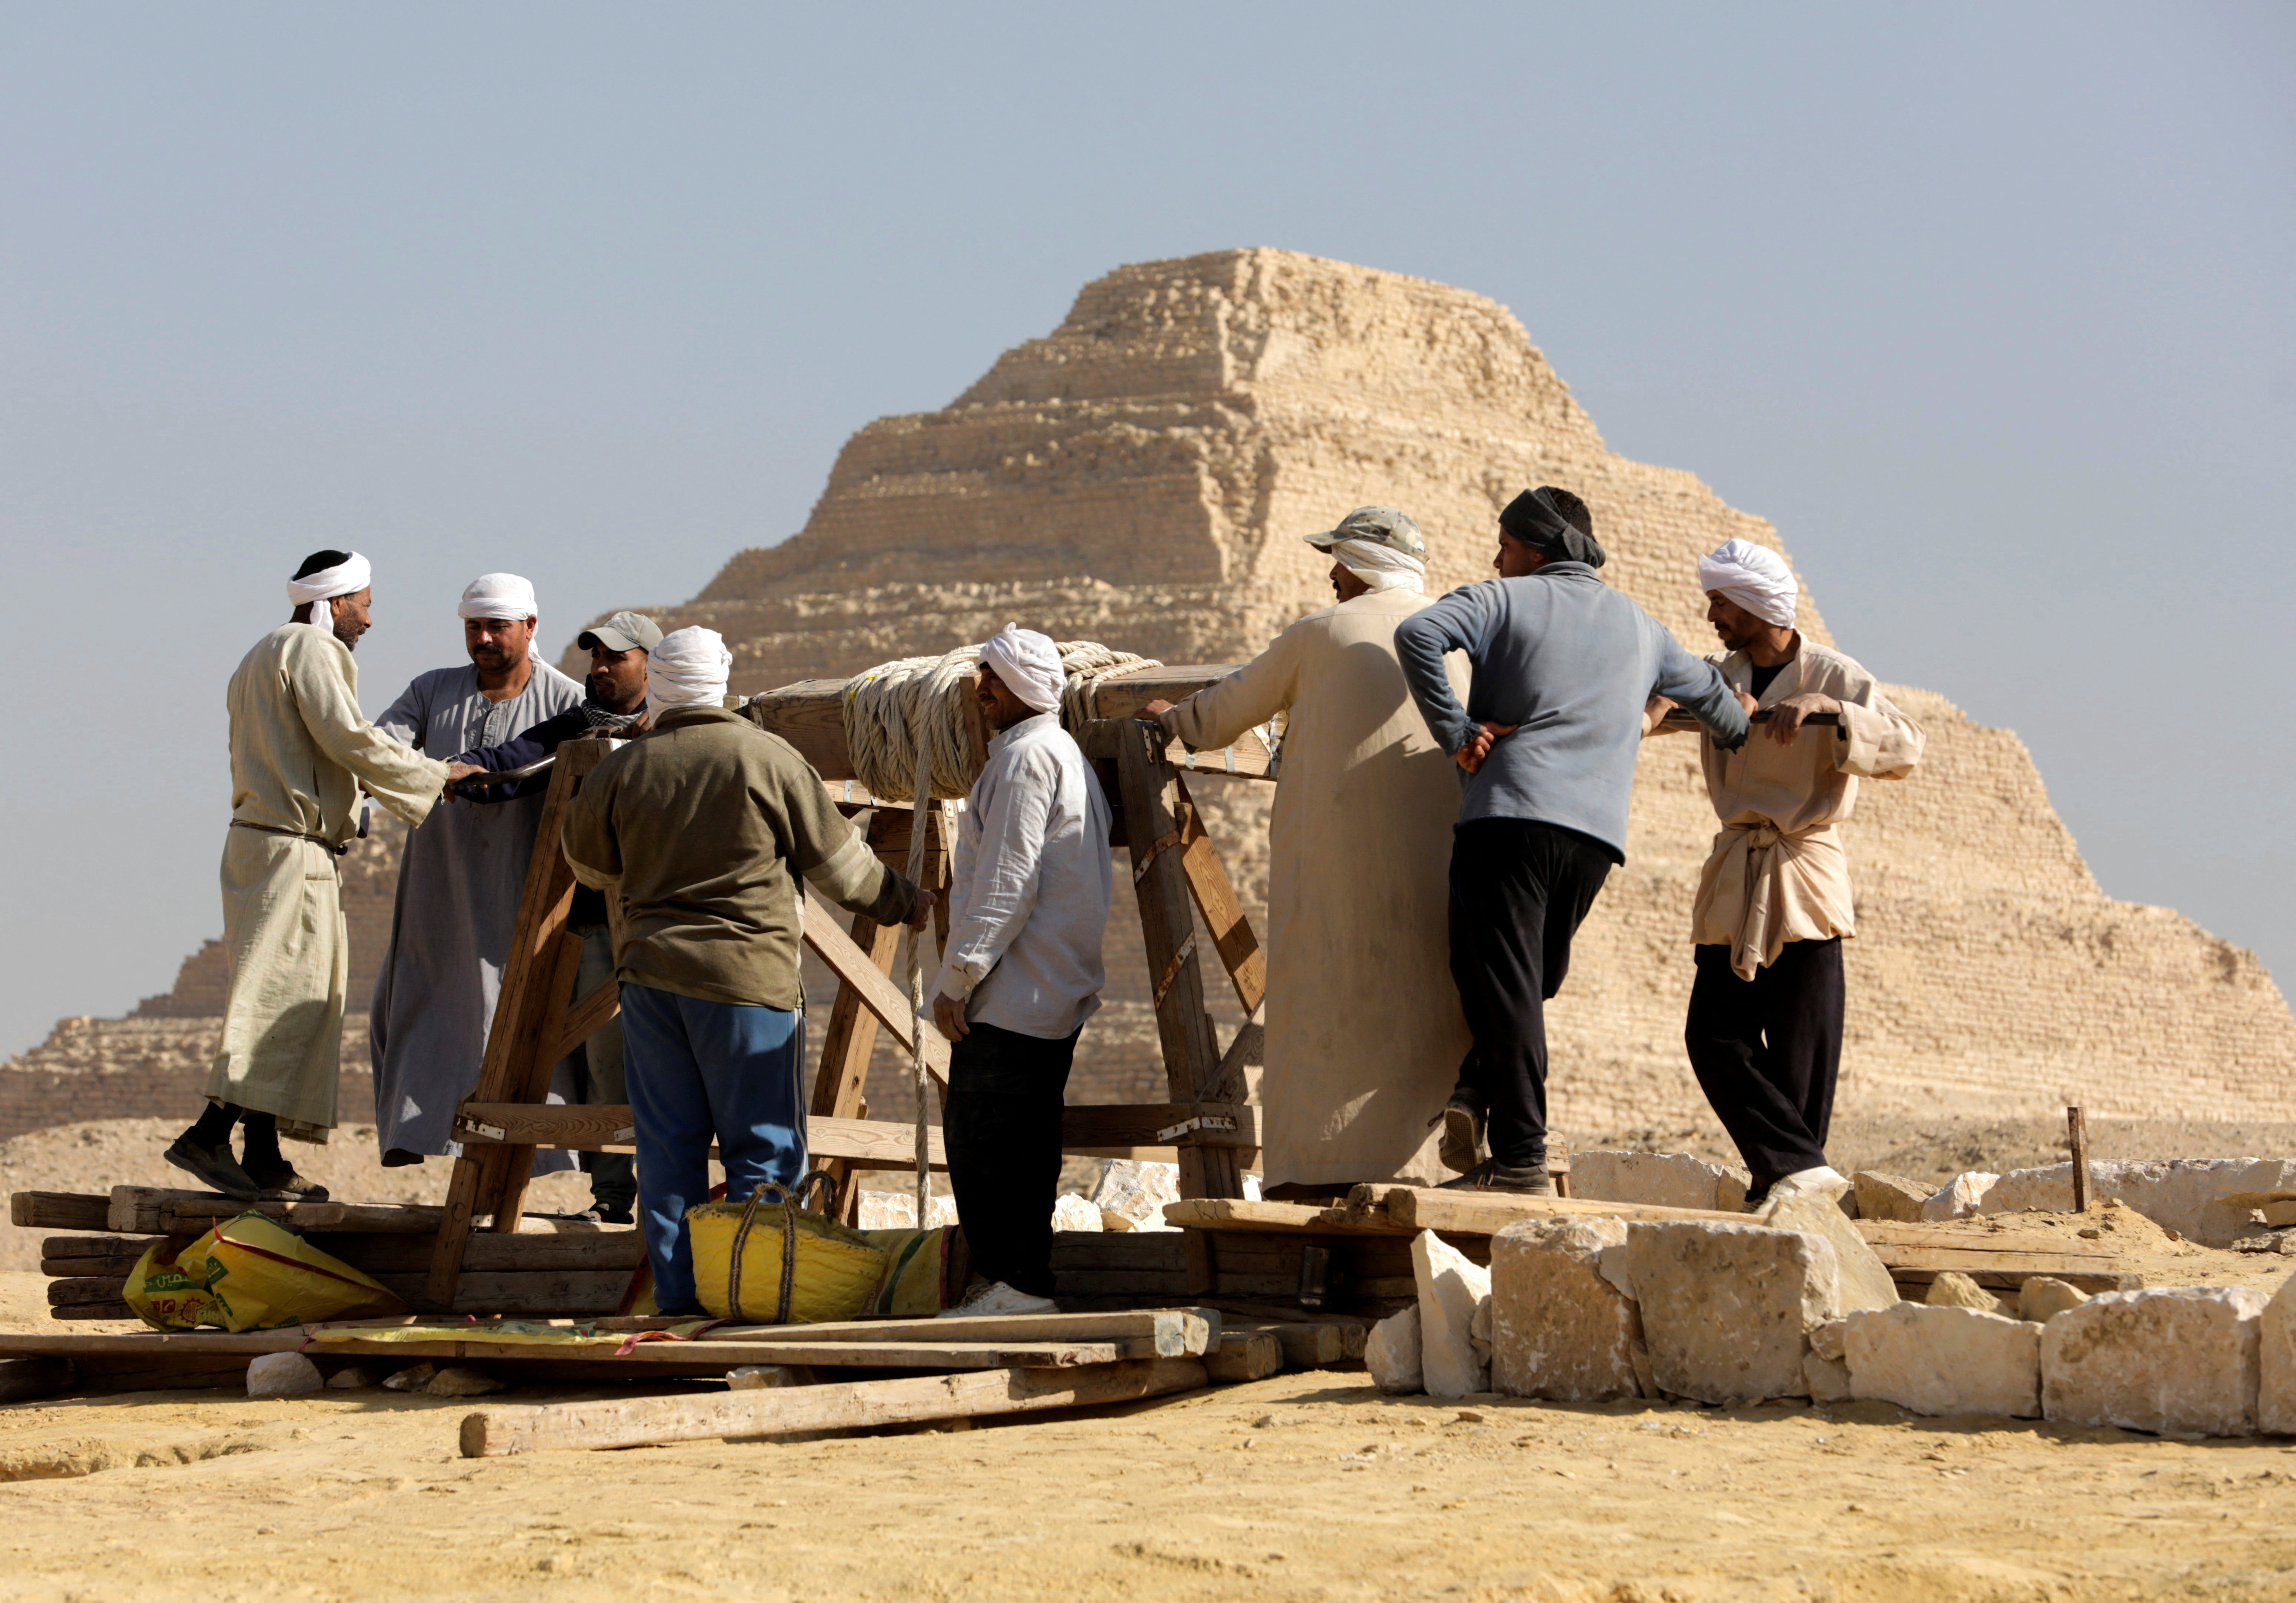 L’archeologo la saluta come forse la mummia “più antica” trovata finora in Egitto